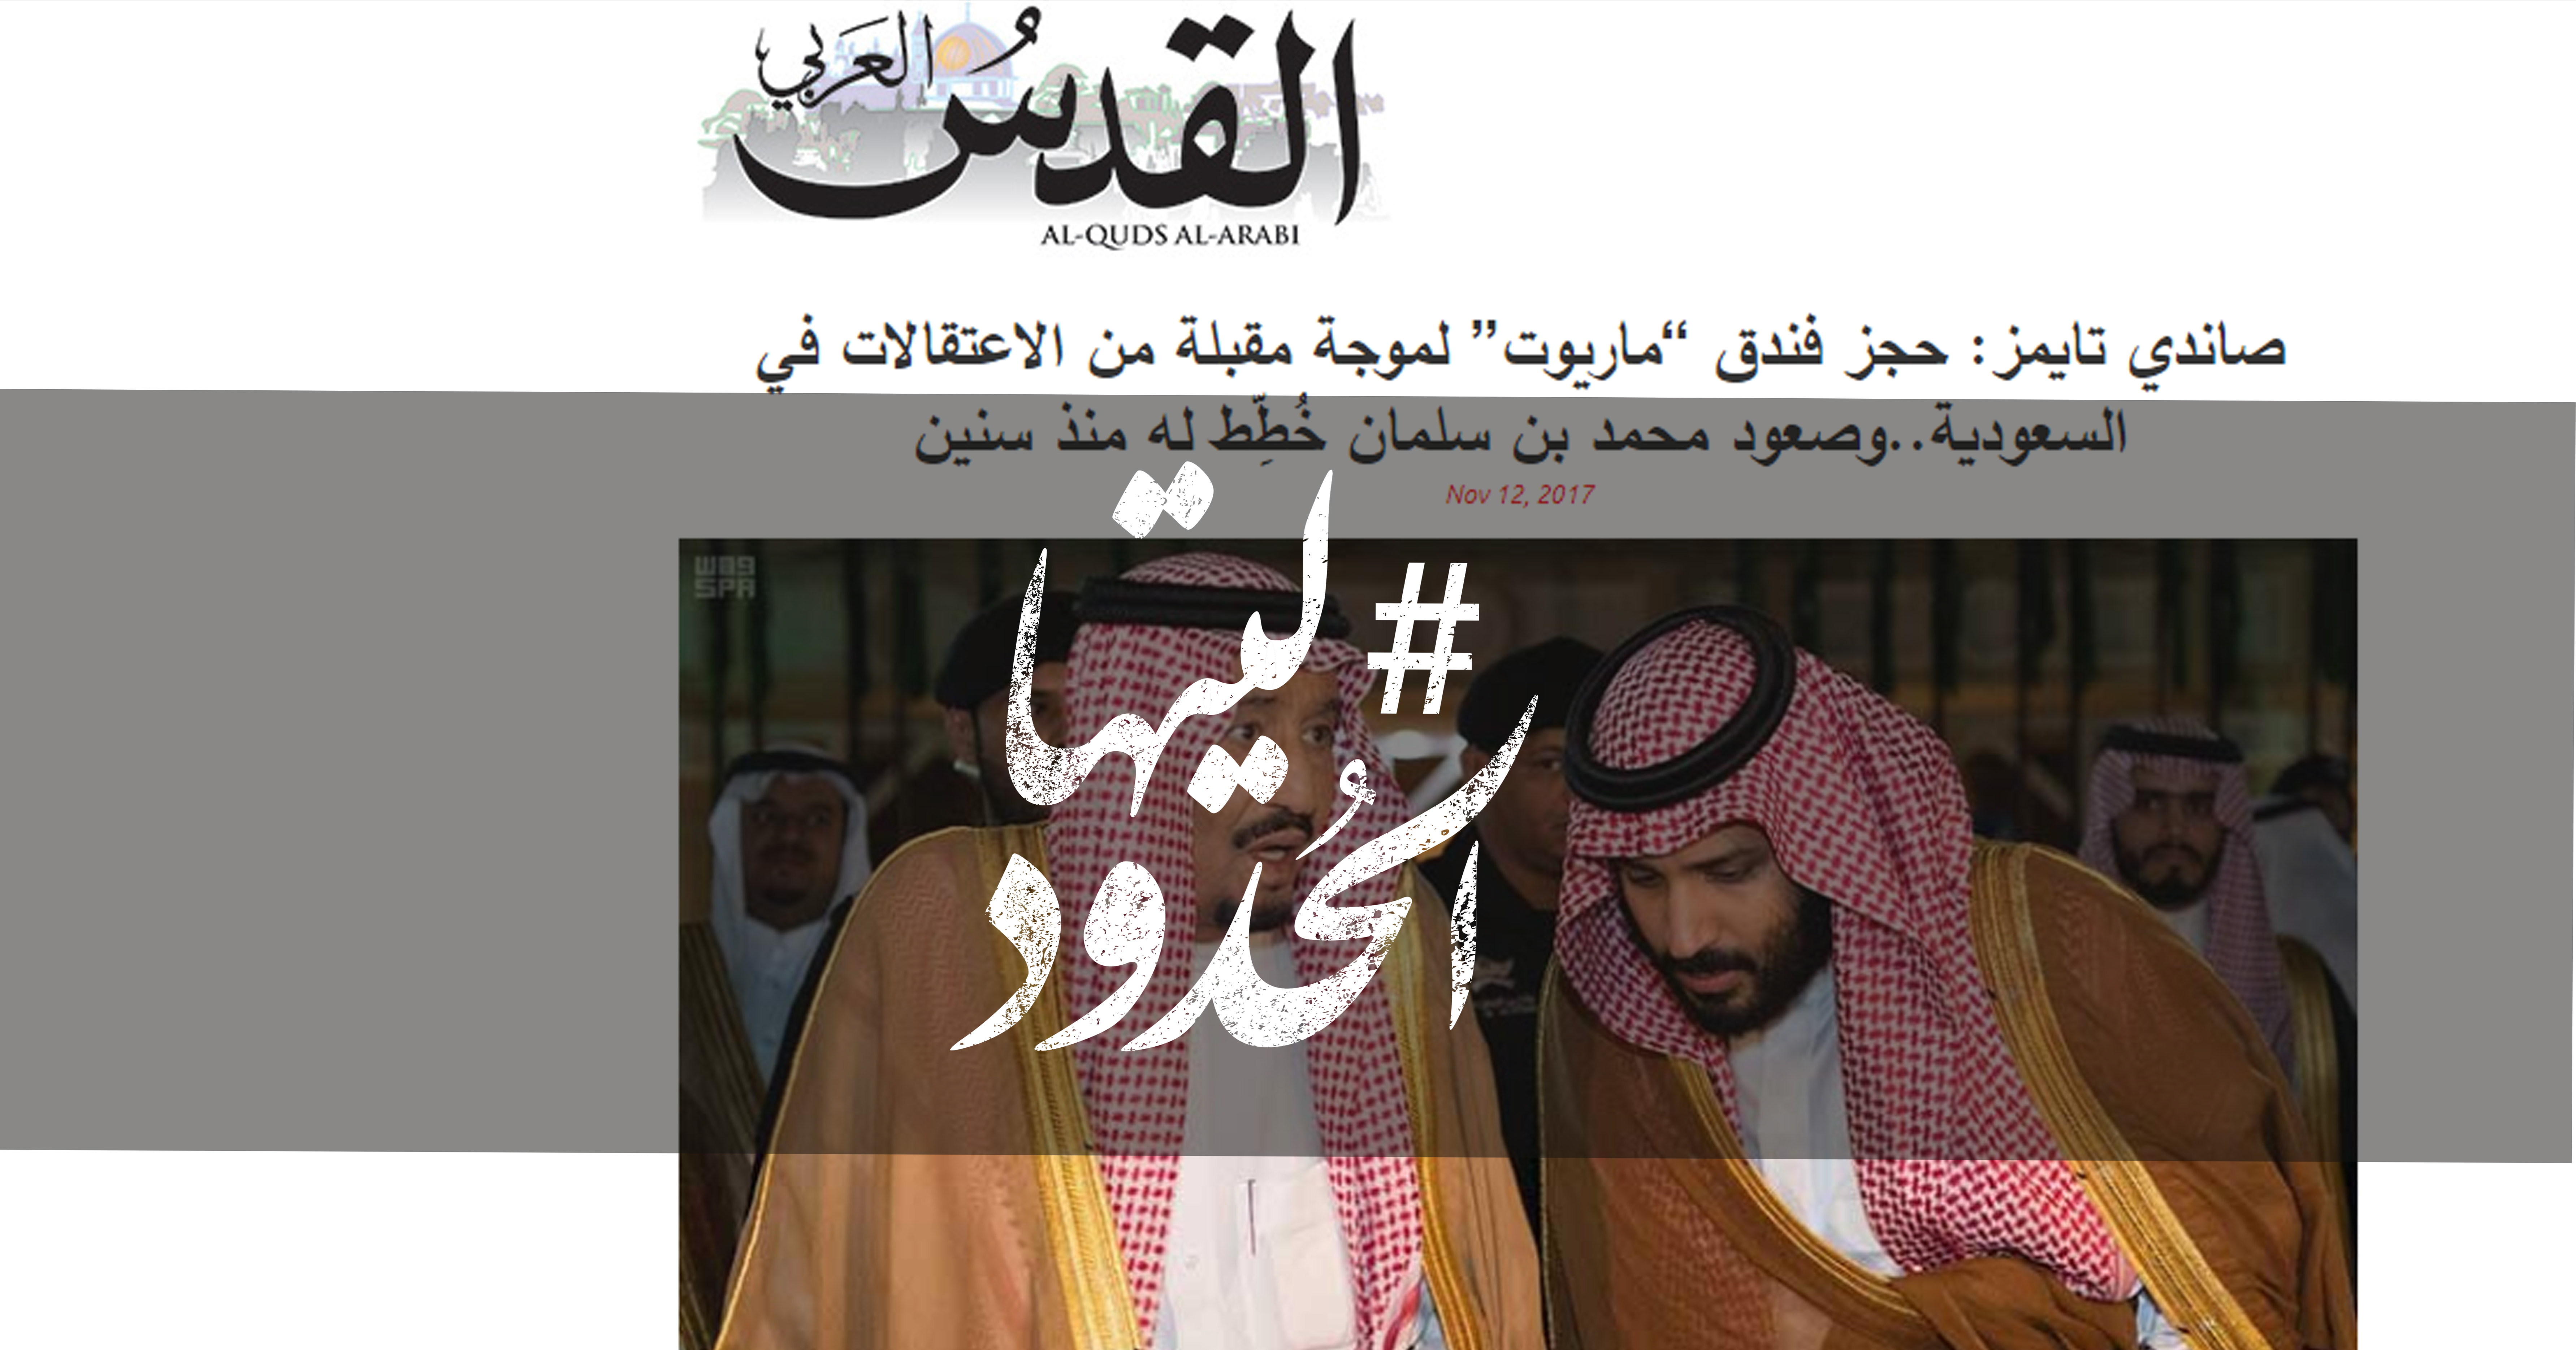 صورة صاندي تايمز: حجز فندق “ماريوت” لموجة مقبلة من الاعتقالات في السعودية